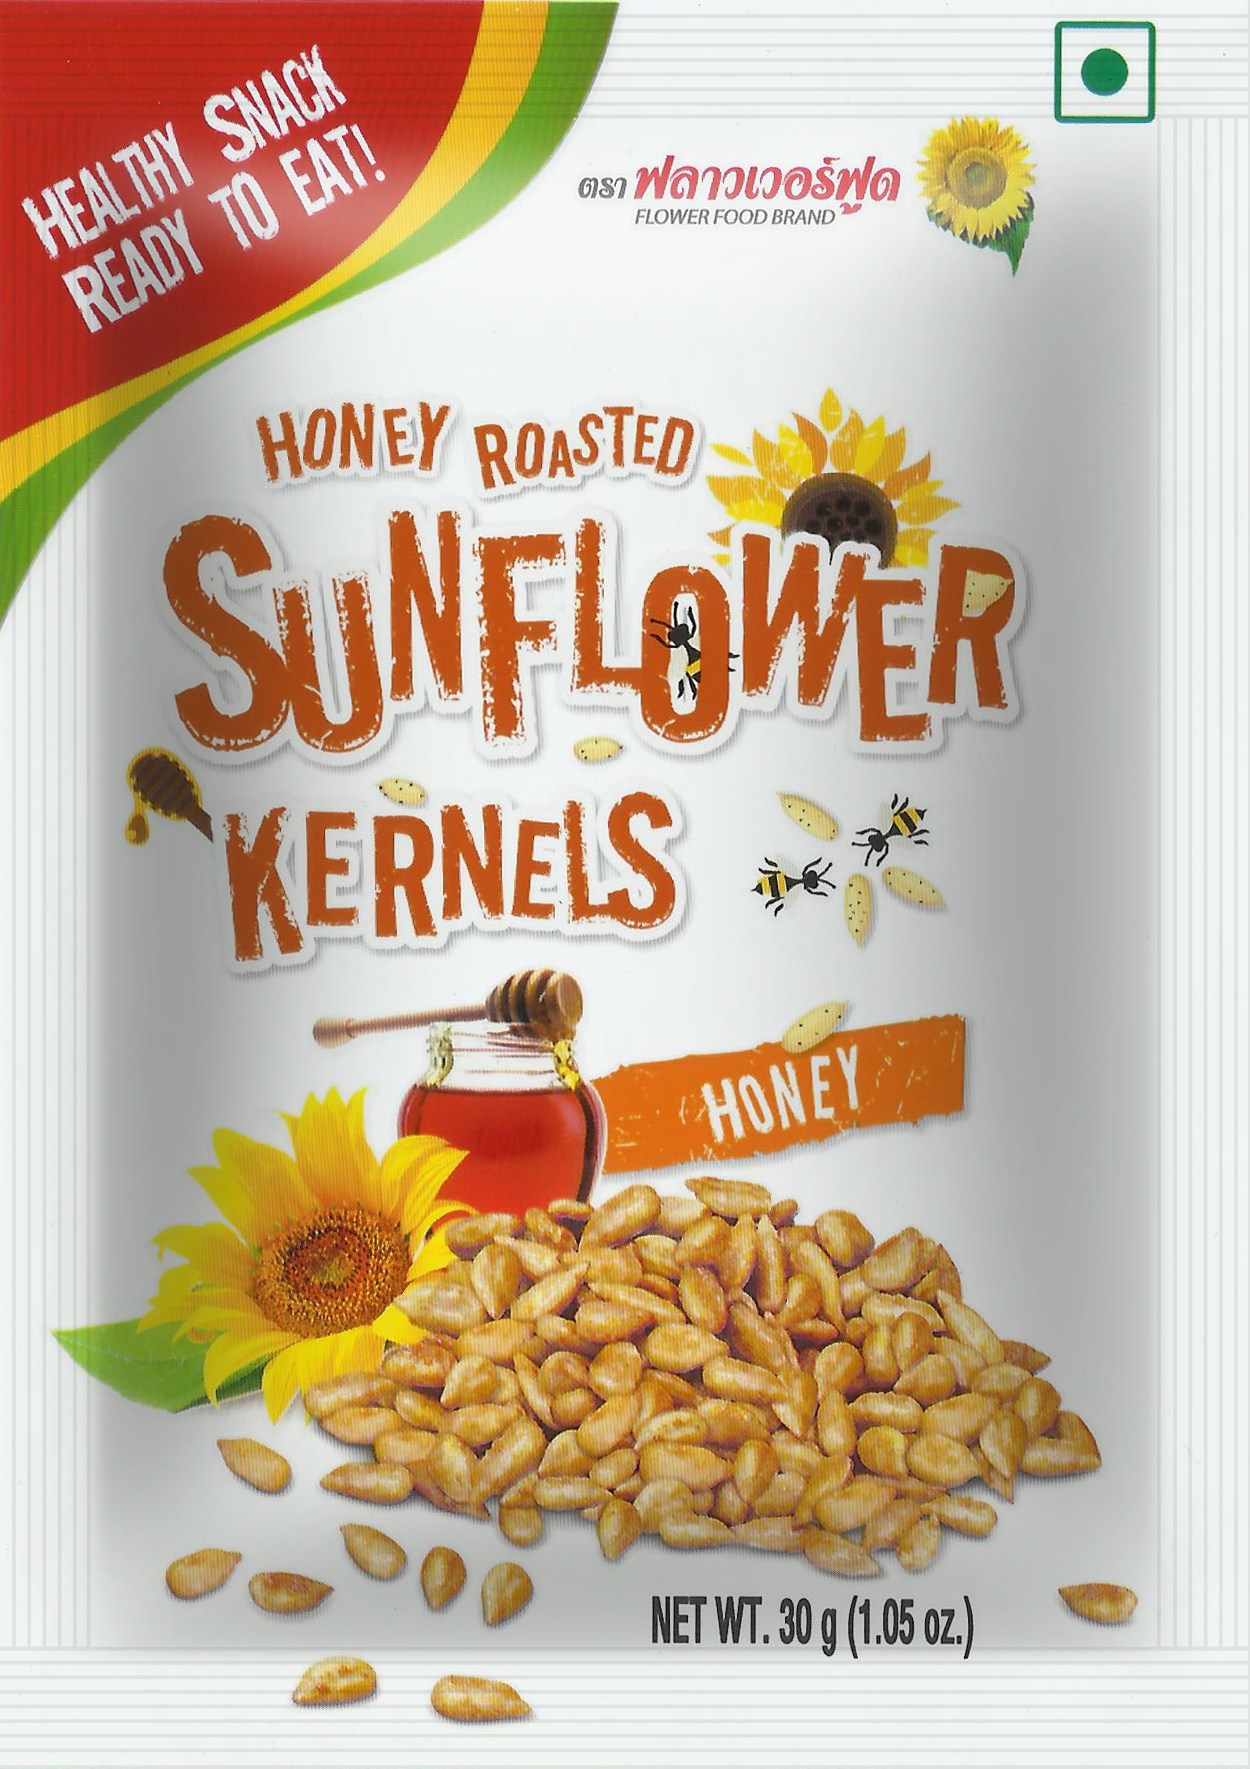 Pack Shot_ Honey roasted sunflower kernels 